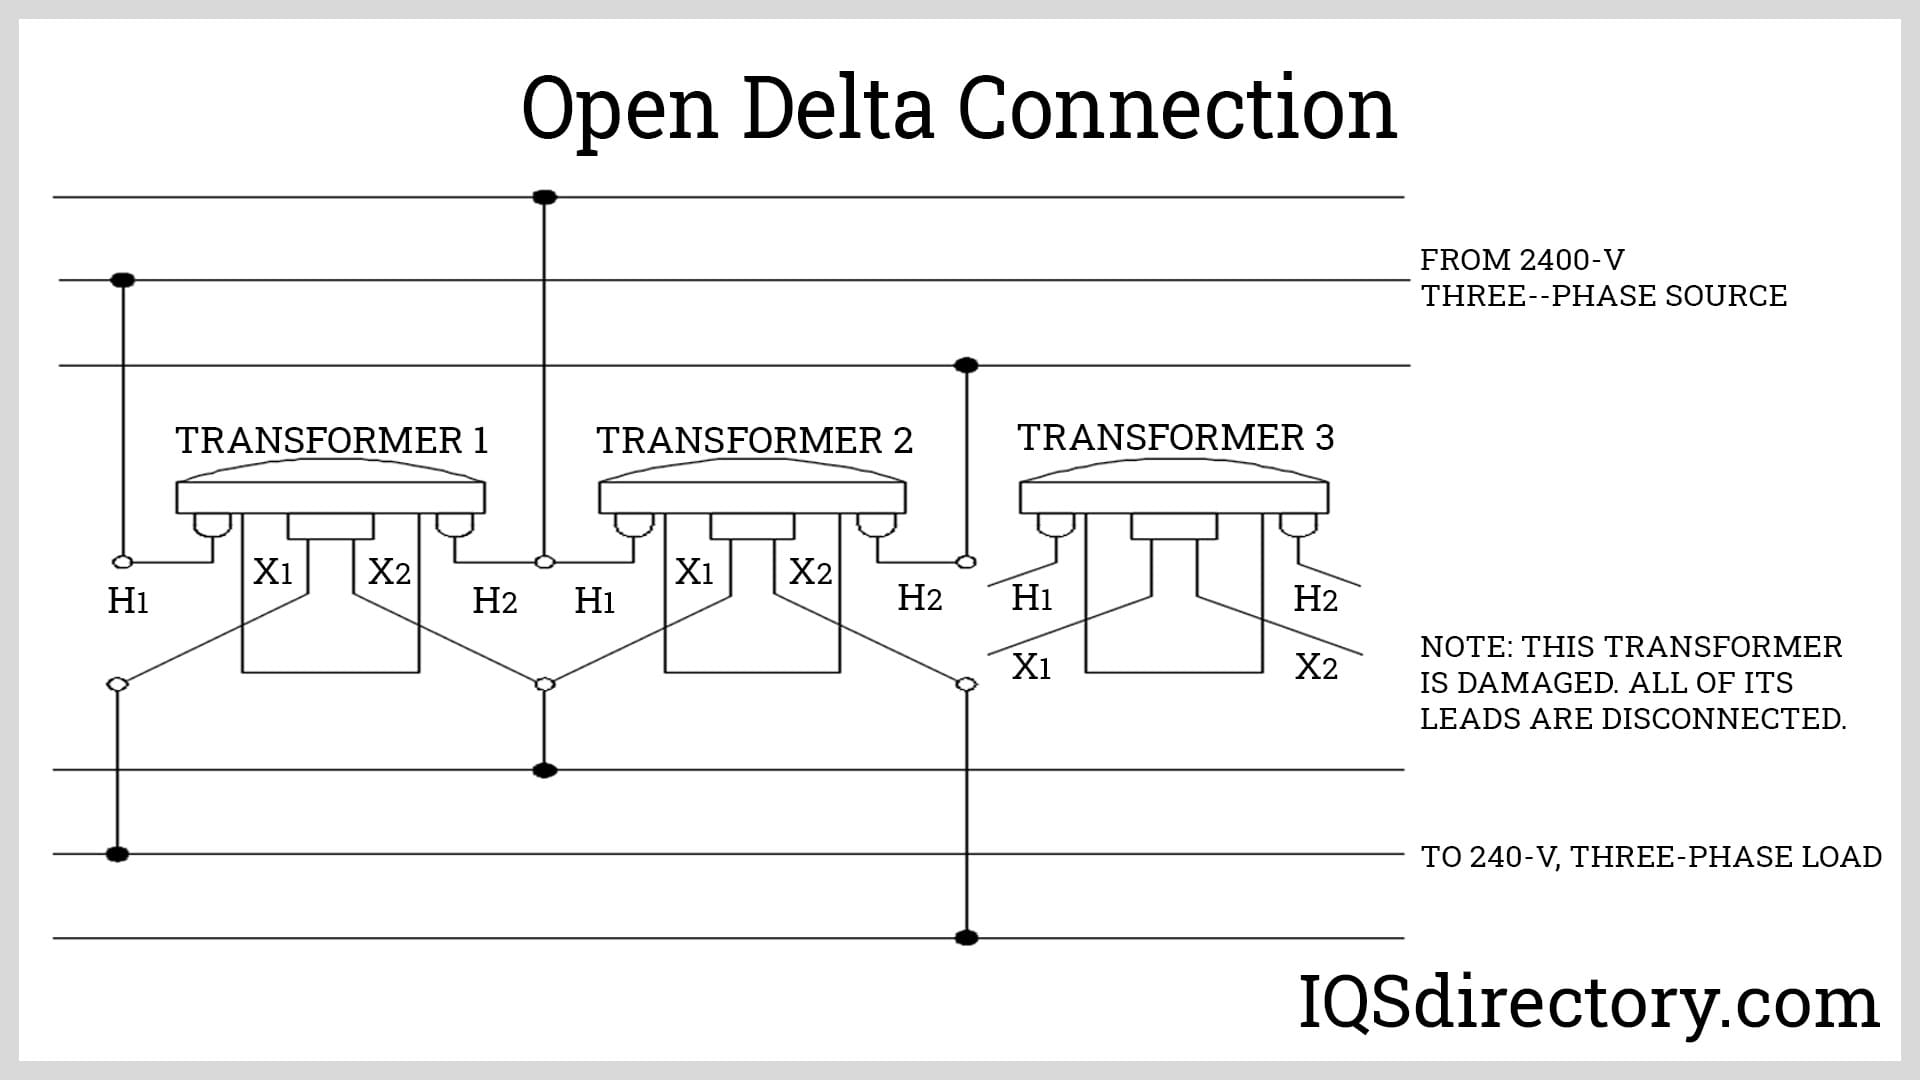 Open Delta Connection